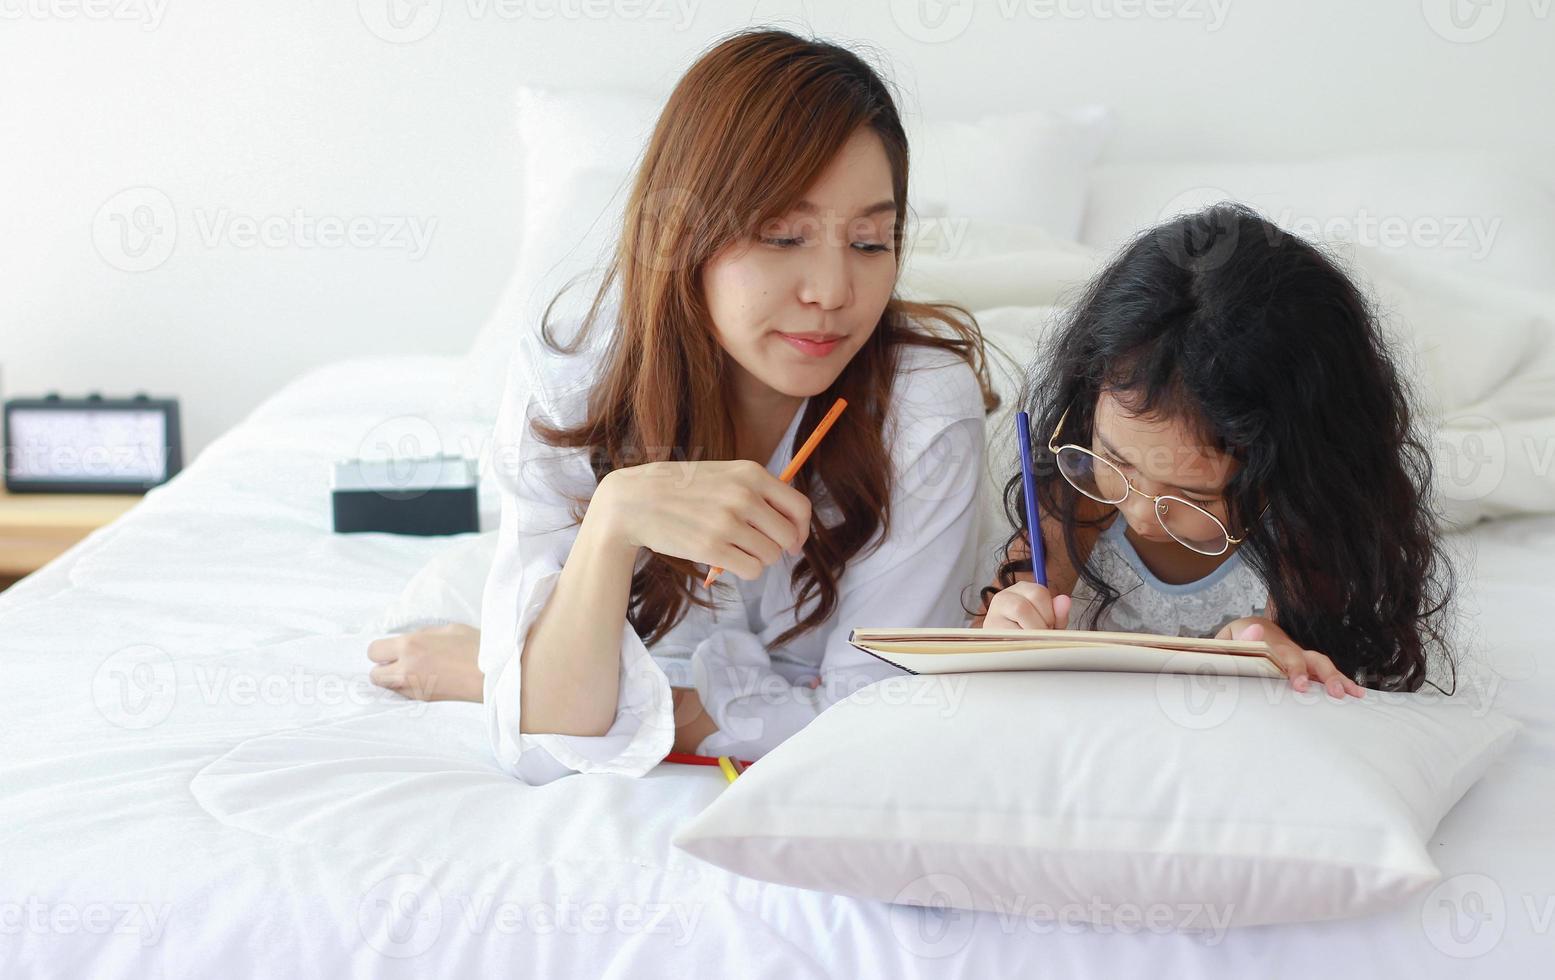 mère et fille asiatique peignent ensemble joyeusement en vacances à la maison photo